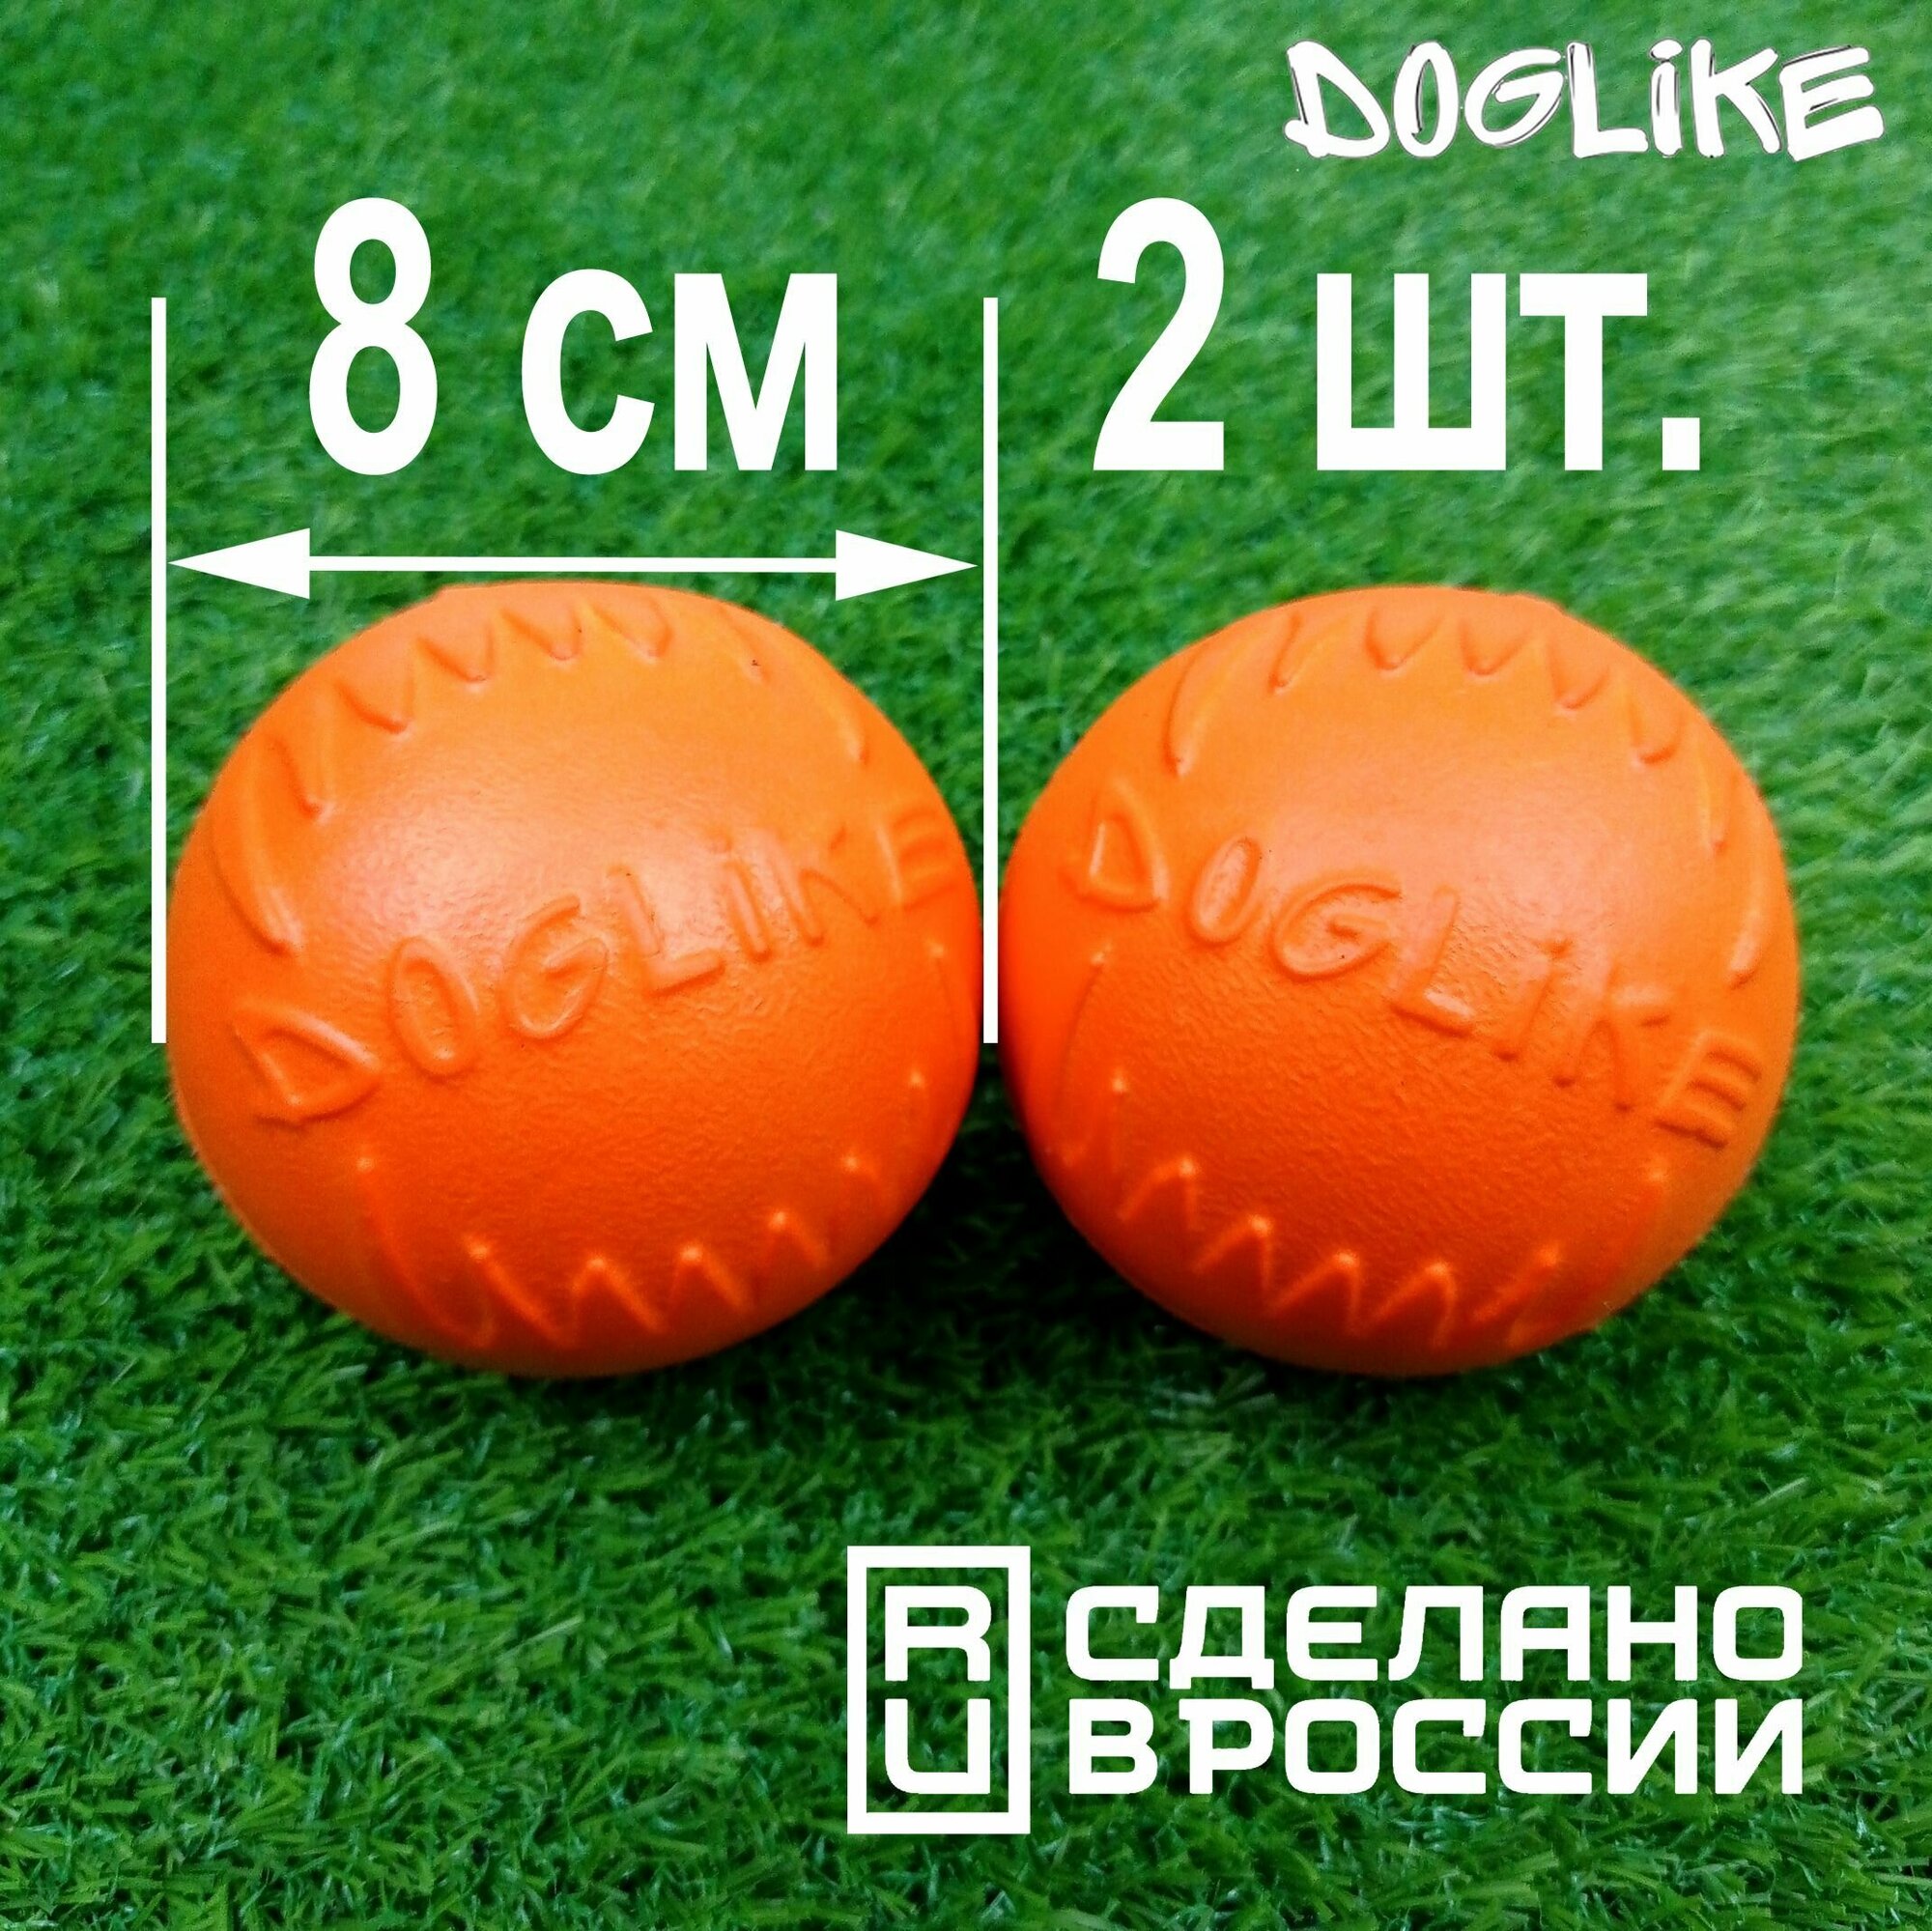 Мячики для собак "ДогЛайк" (Doglike) большие 8 см, для средних и крупных пород, антивандальная игрушка для собак